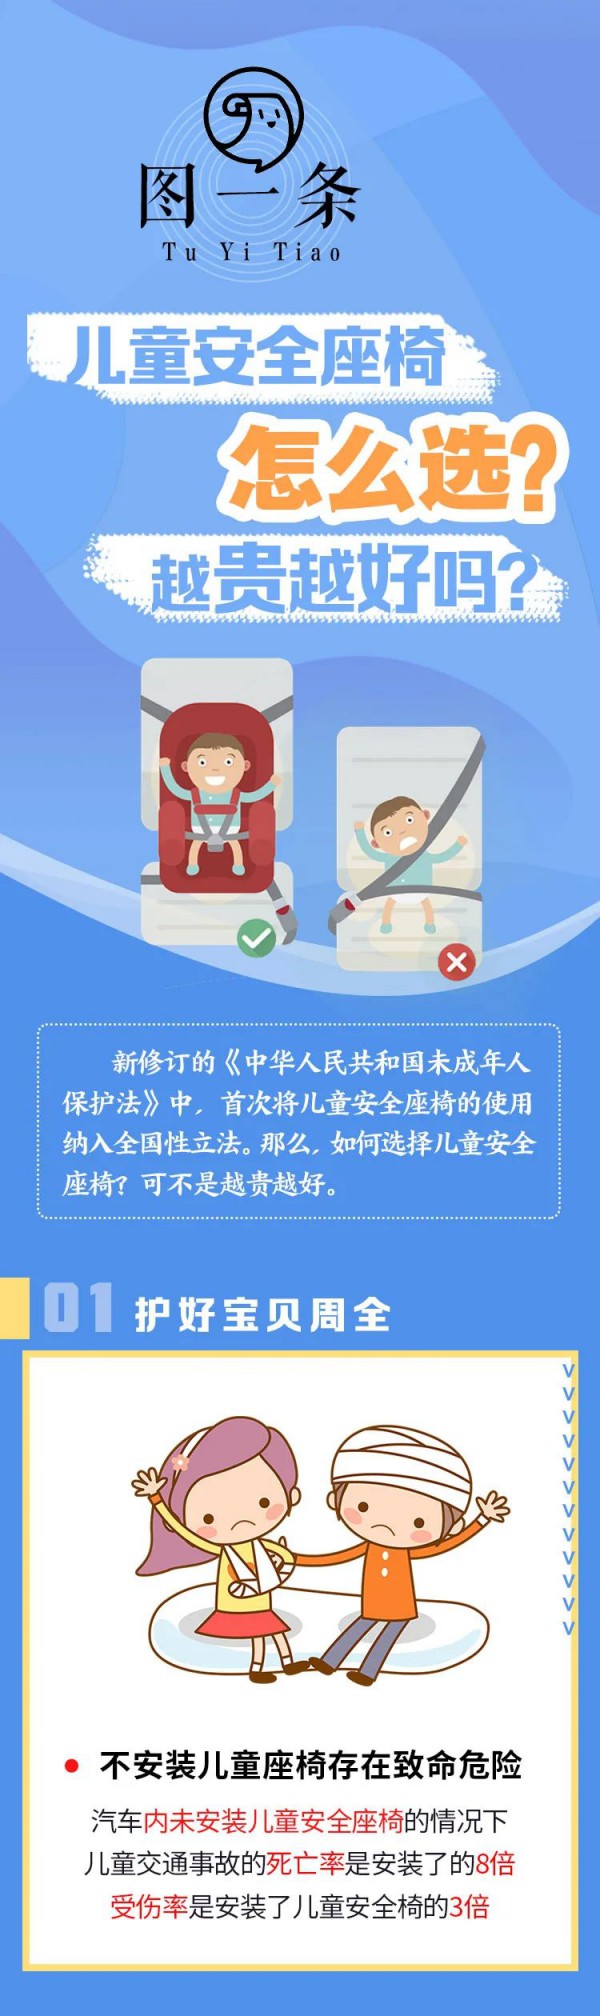 武汉交管回应：6月1日后 未用儿童安全座椅会受处罚吗